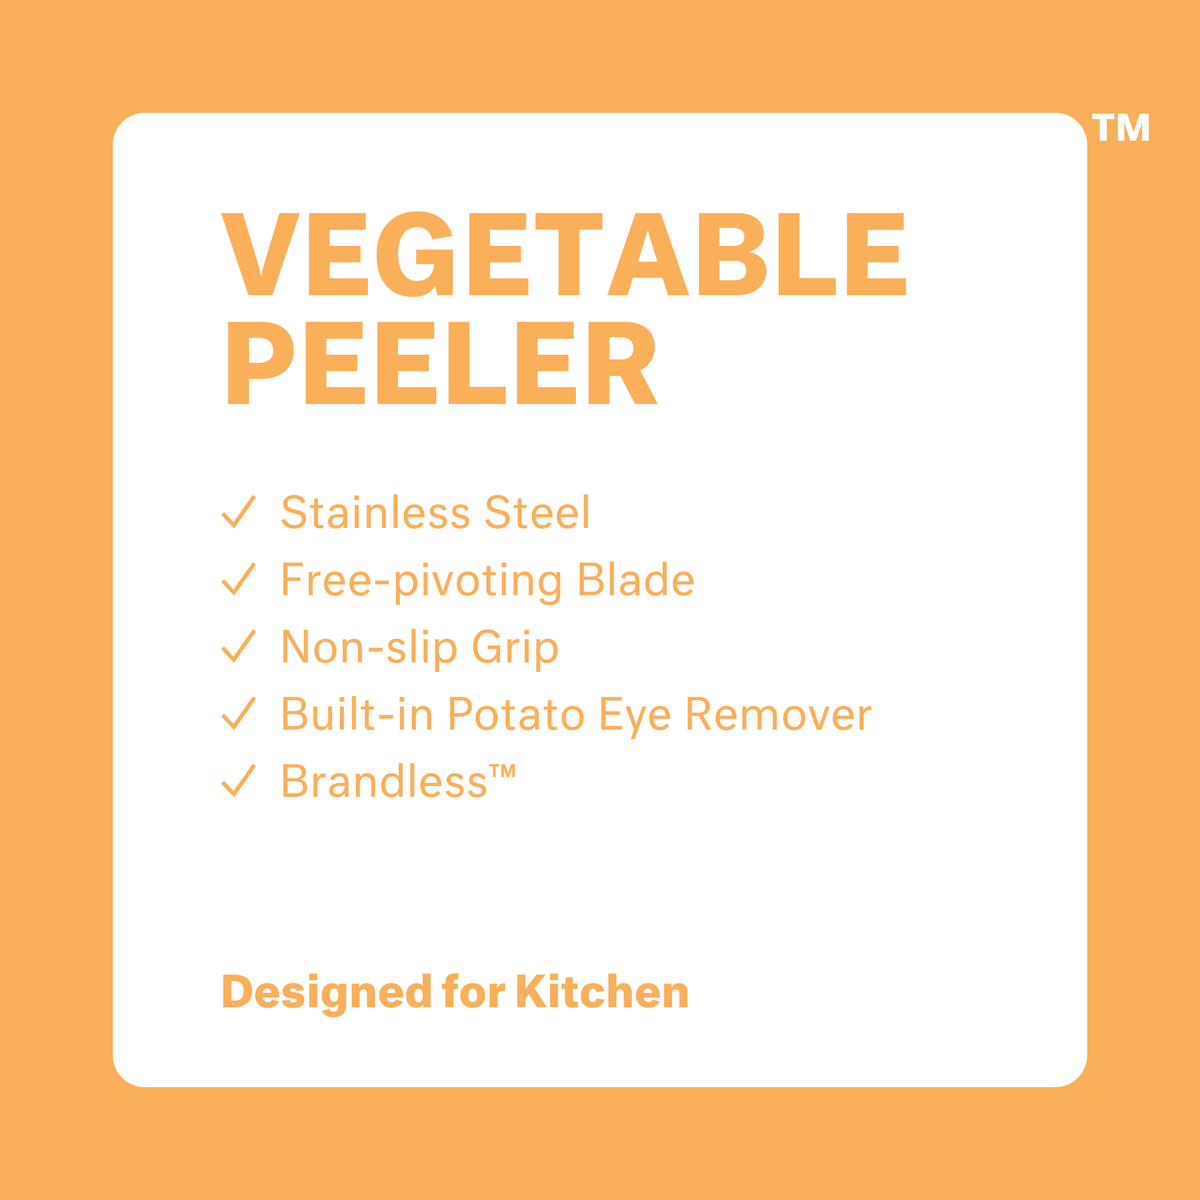 Vegetable Peeler: stainless steel, free-pivoting blade, non-sliip grip, built-in potato eye remover. Brandless. Designed for kitchen